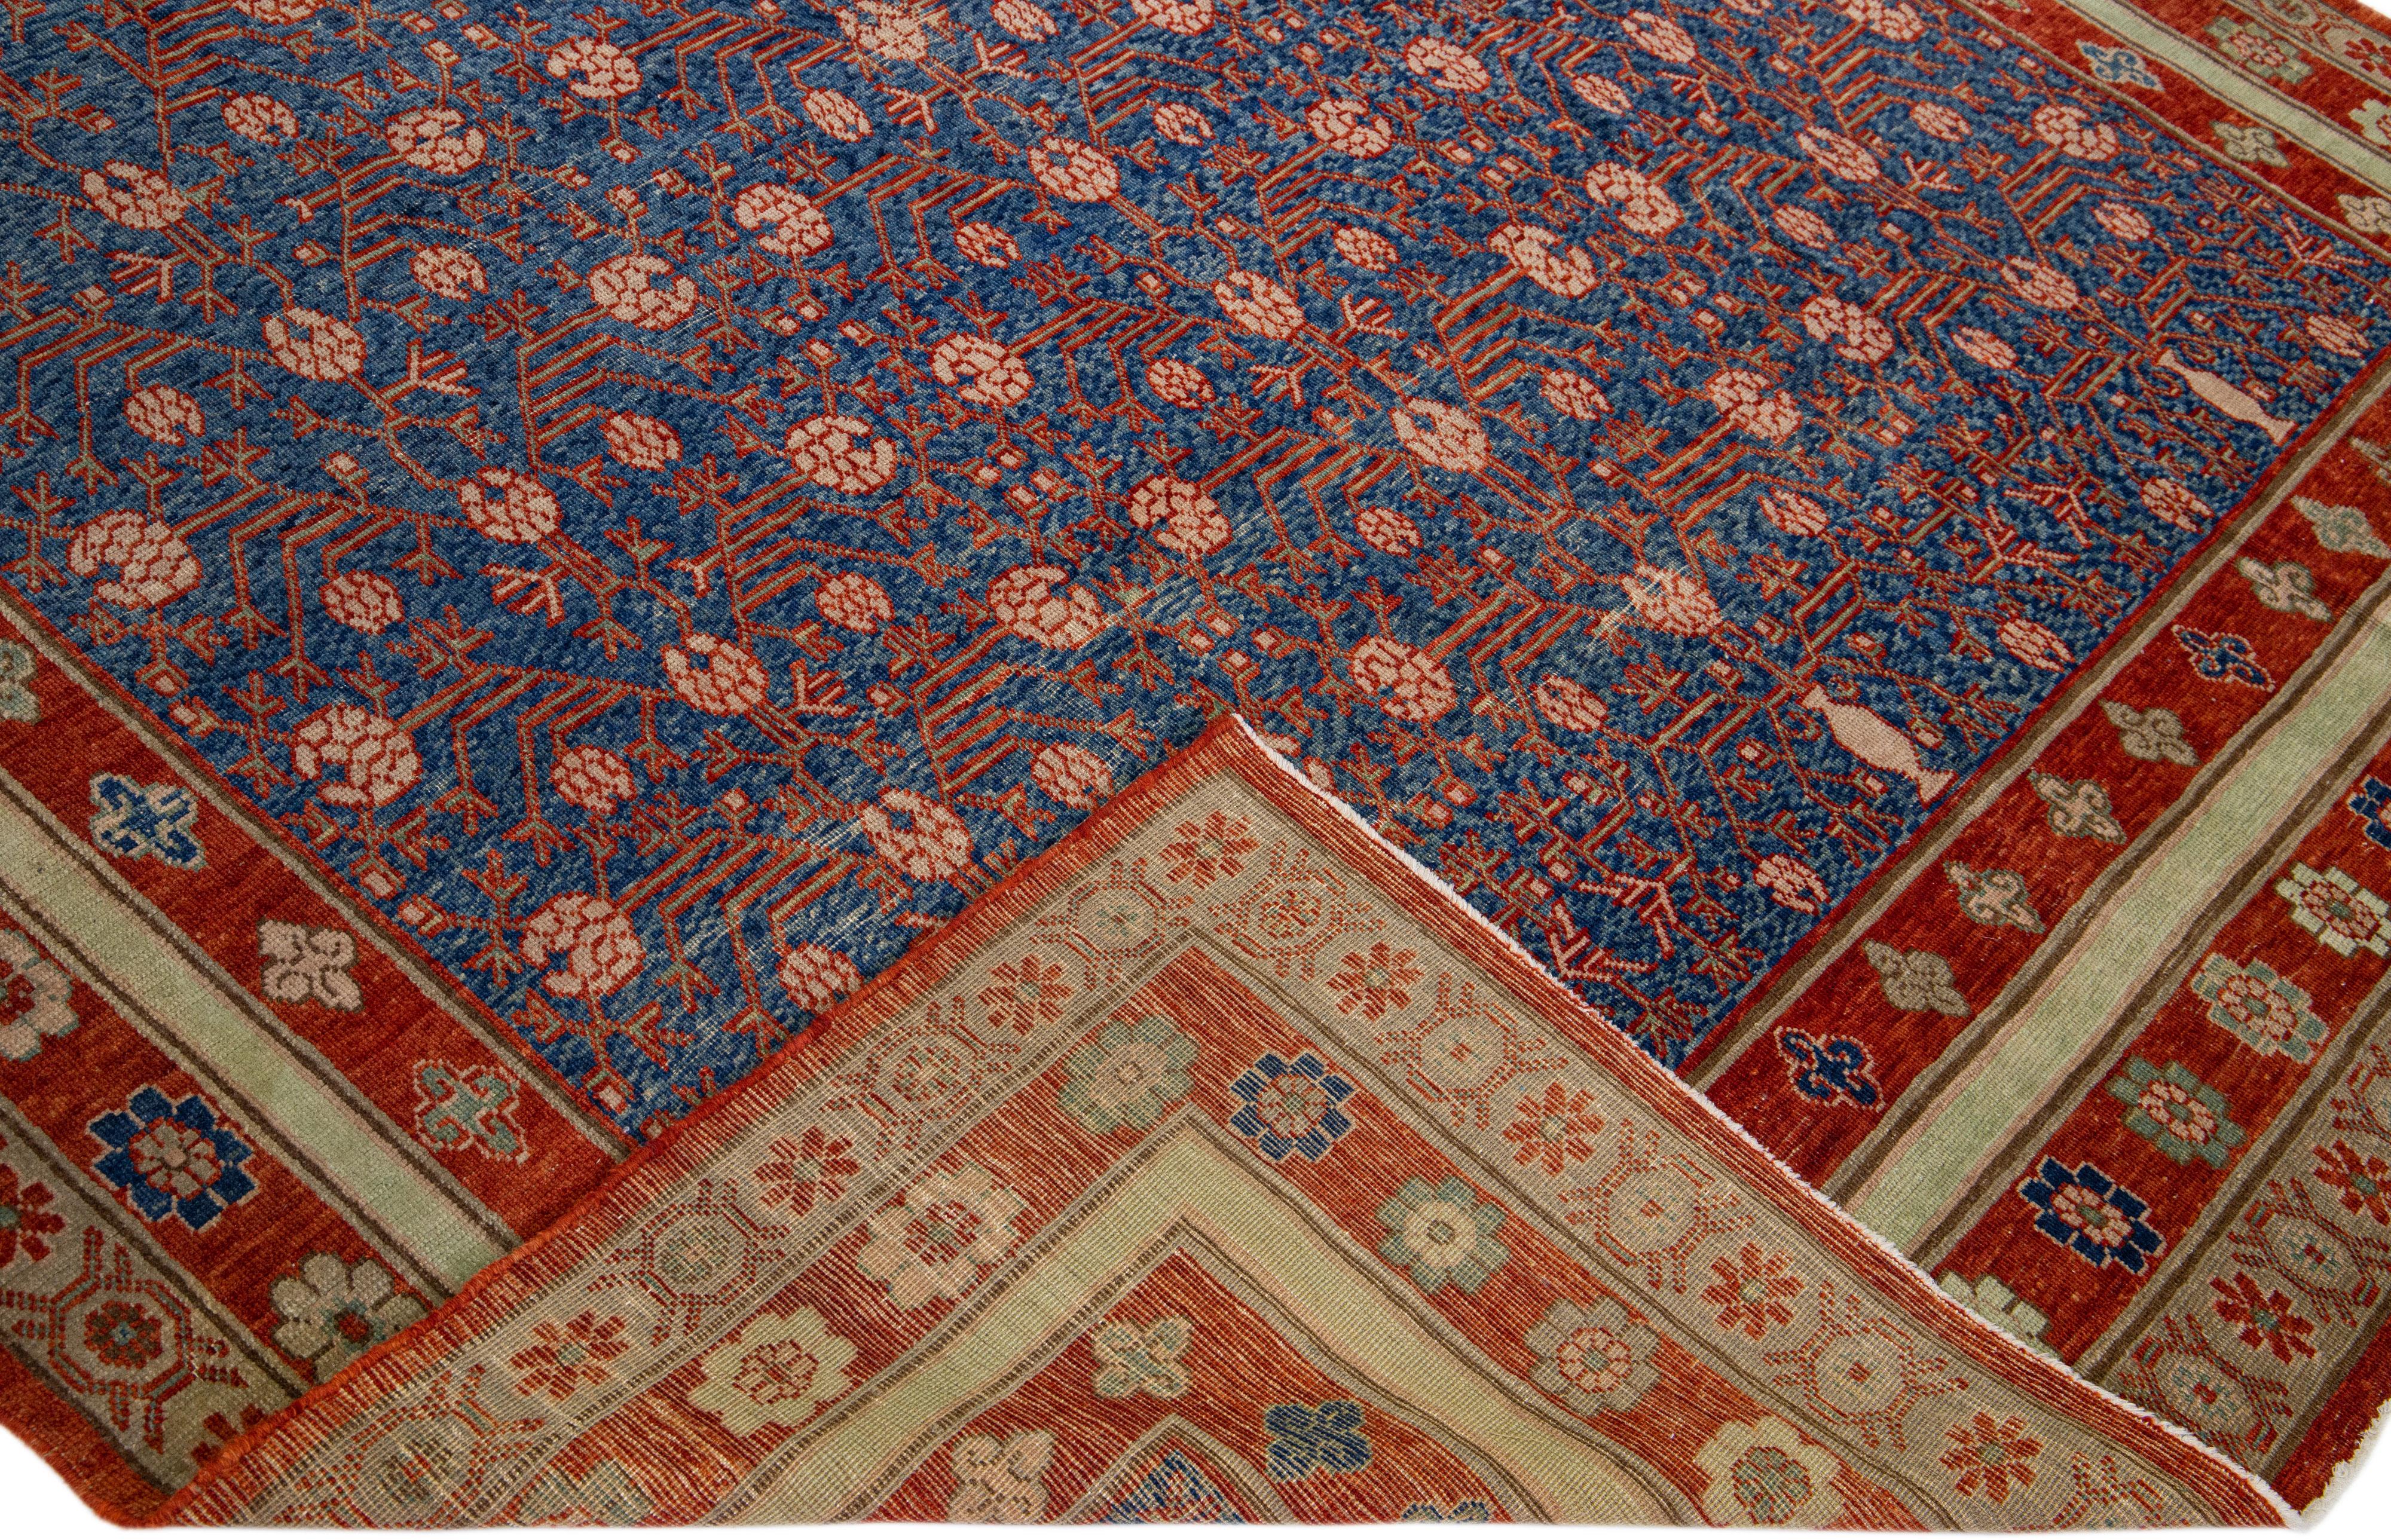 Schöner Vintage-Teppich im Khotan-Stil mit blauem Feld. Dieser Teppich hat einen floral gestalteten roten Rahmen mit mehrfarbigen Akzenten in miteinander verbundenen Granatapfelrosetten, Blättern und Rankenmuster. 

Dieser Teppich misst 7'8